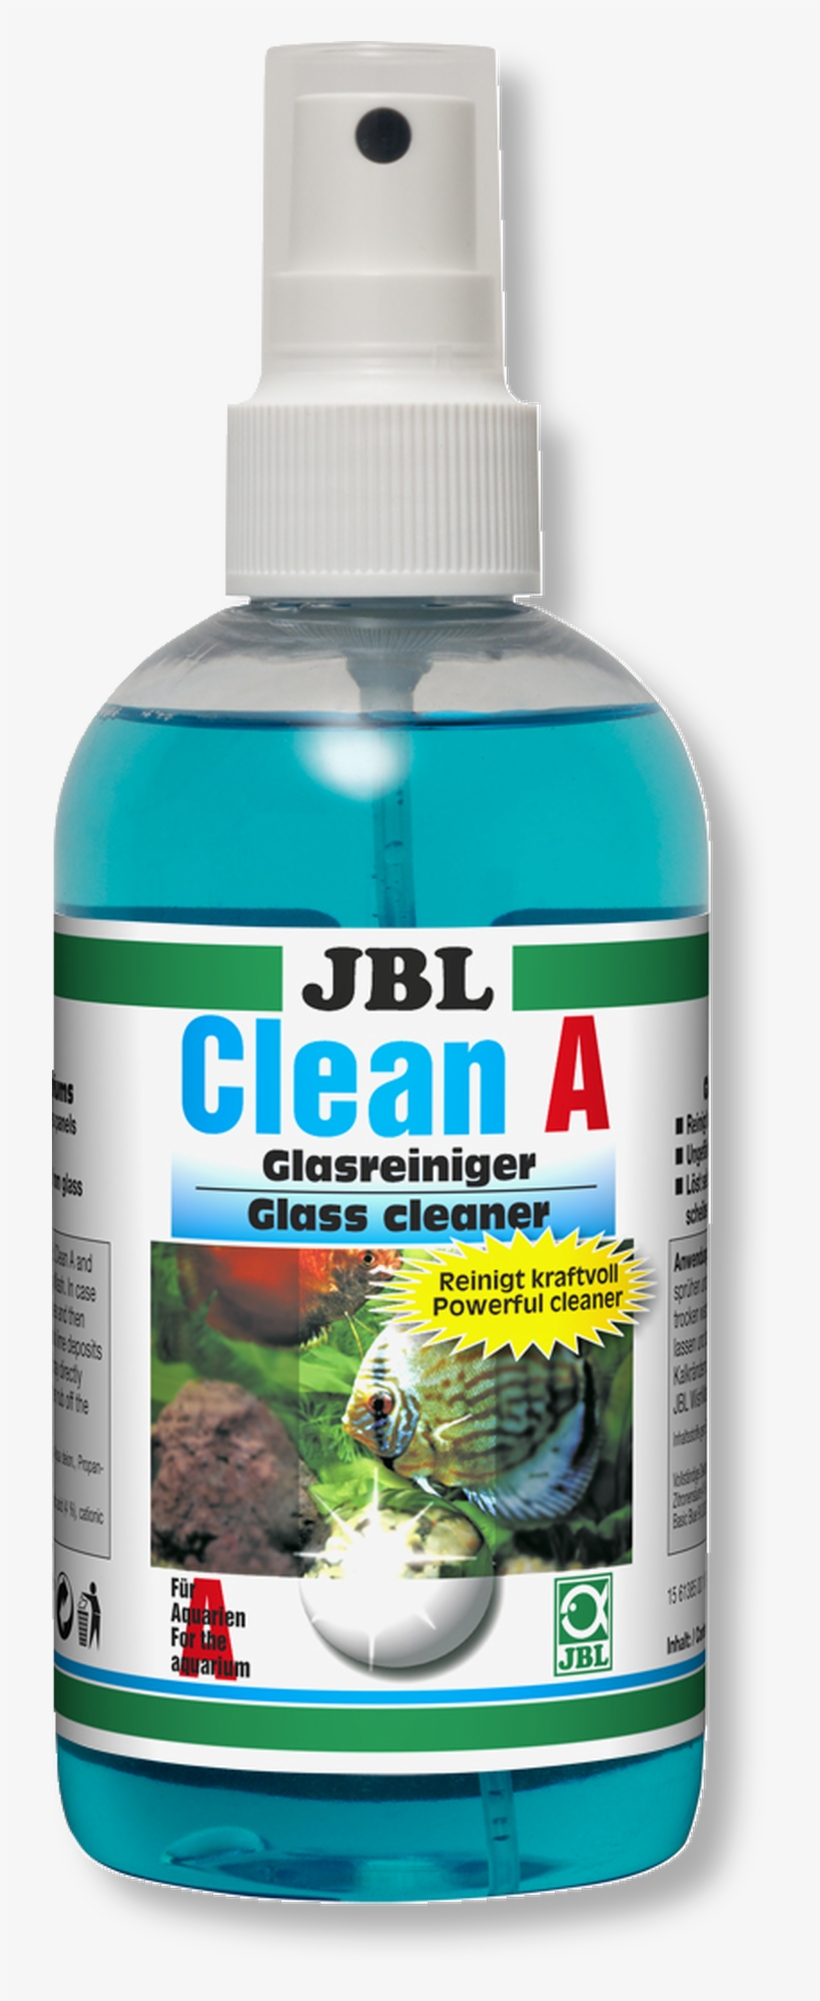 Jbl Gmbh & Co - Aquarium Glass Cleaning Liquid, transparent png #8281143